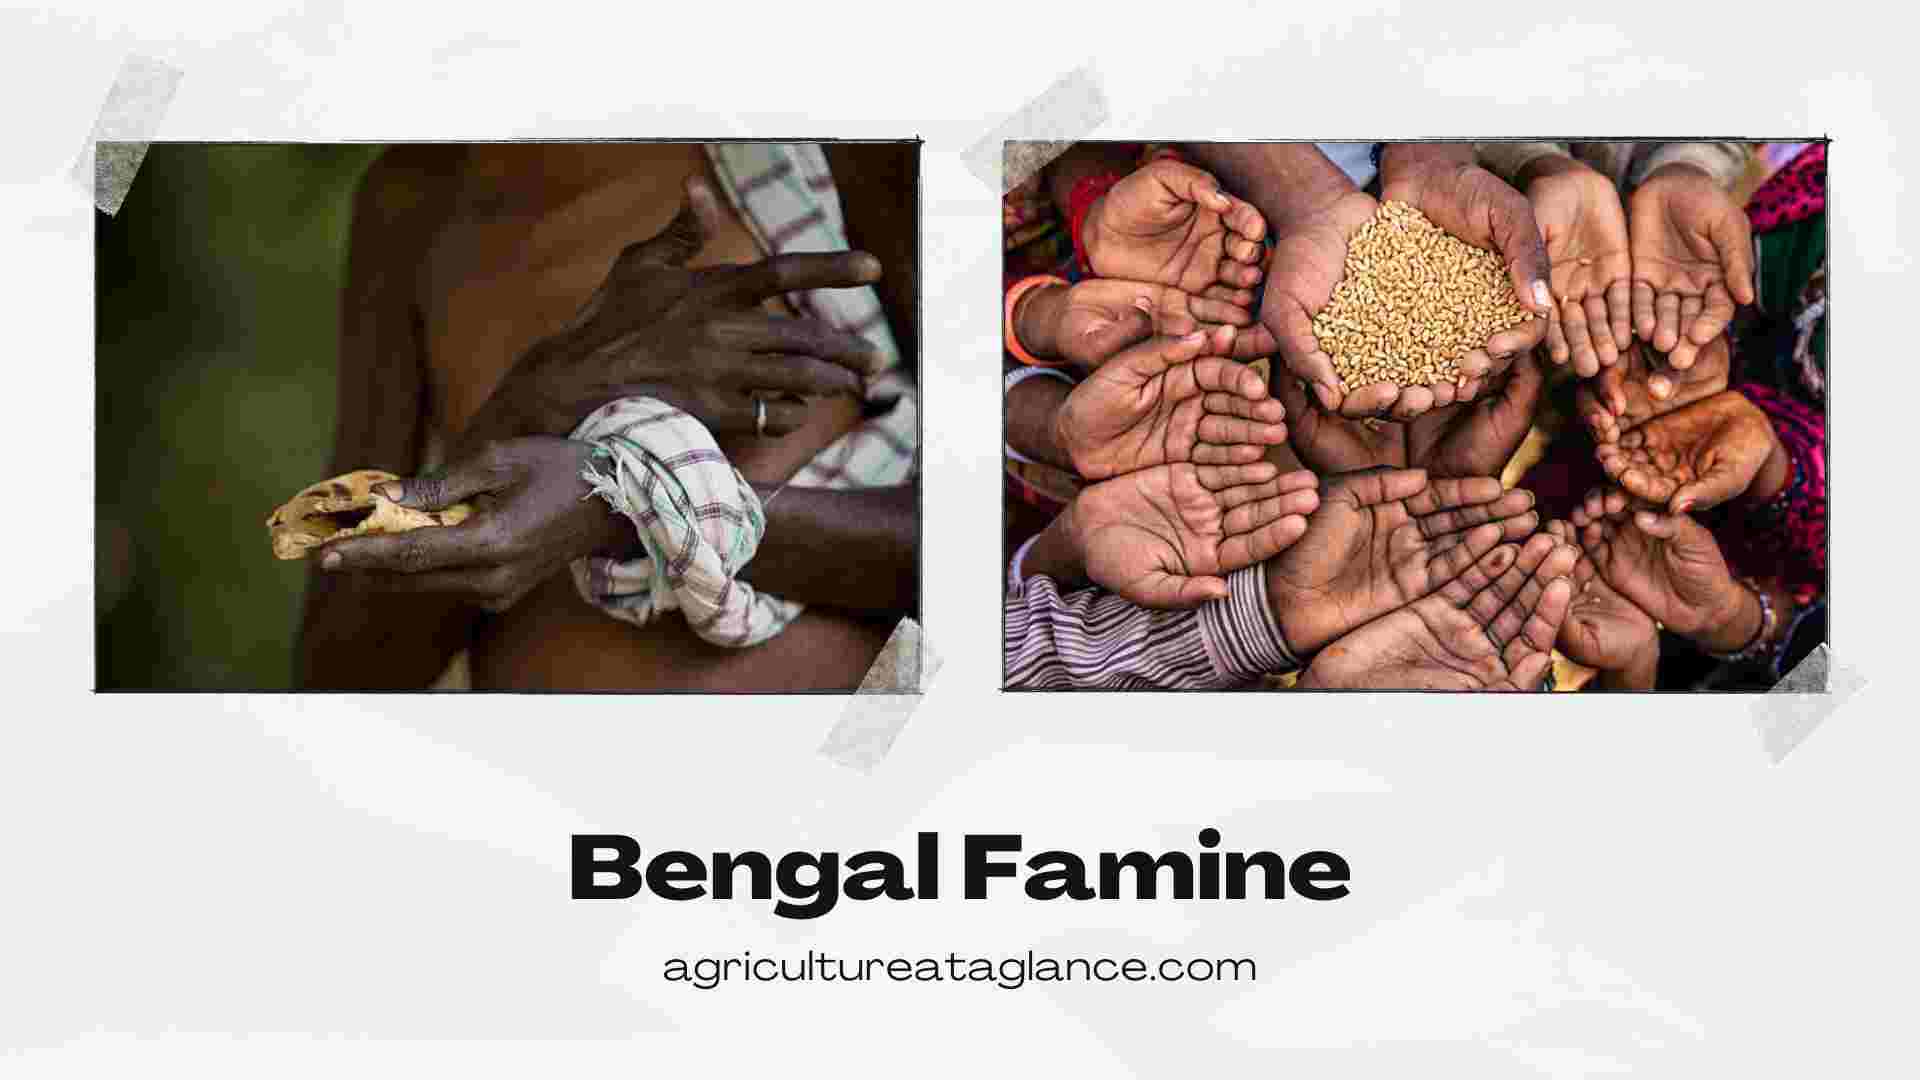 Bеngal Faminе 1943